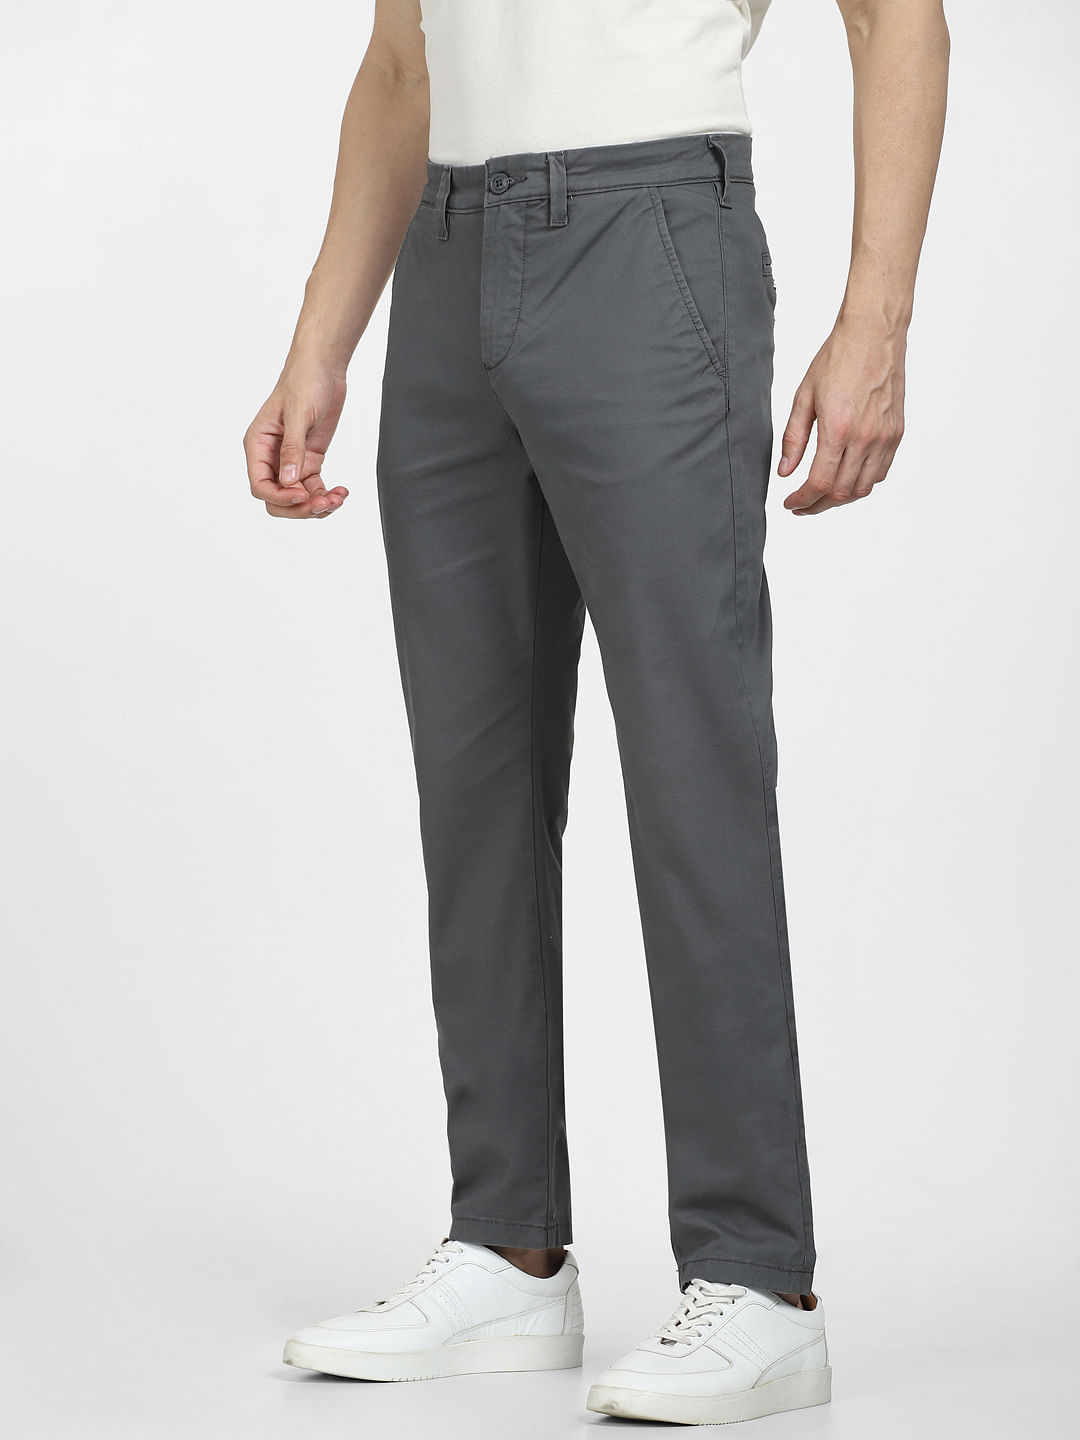 Plaid&Plain Men's Skinny Stretchy Khaki Pants Colored Pants Slim Fit Slacks  Tape | eBay